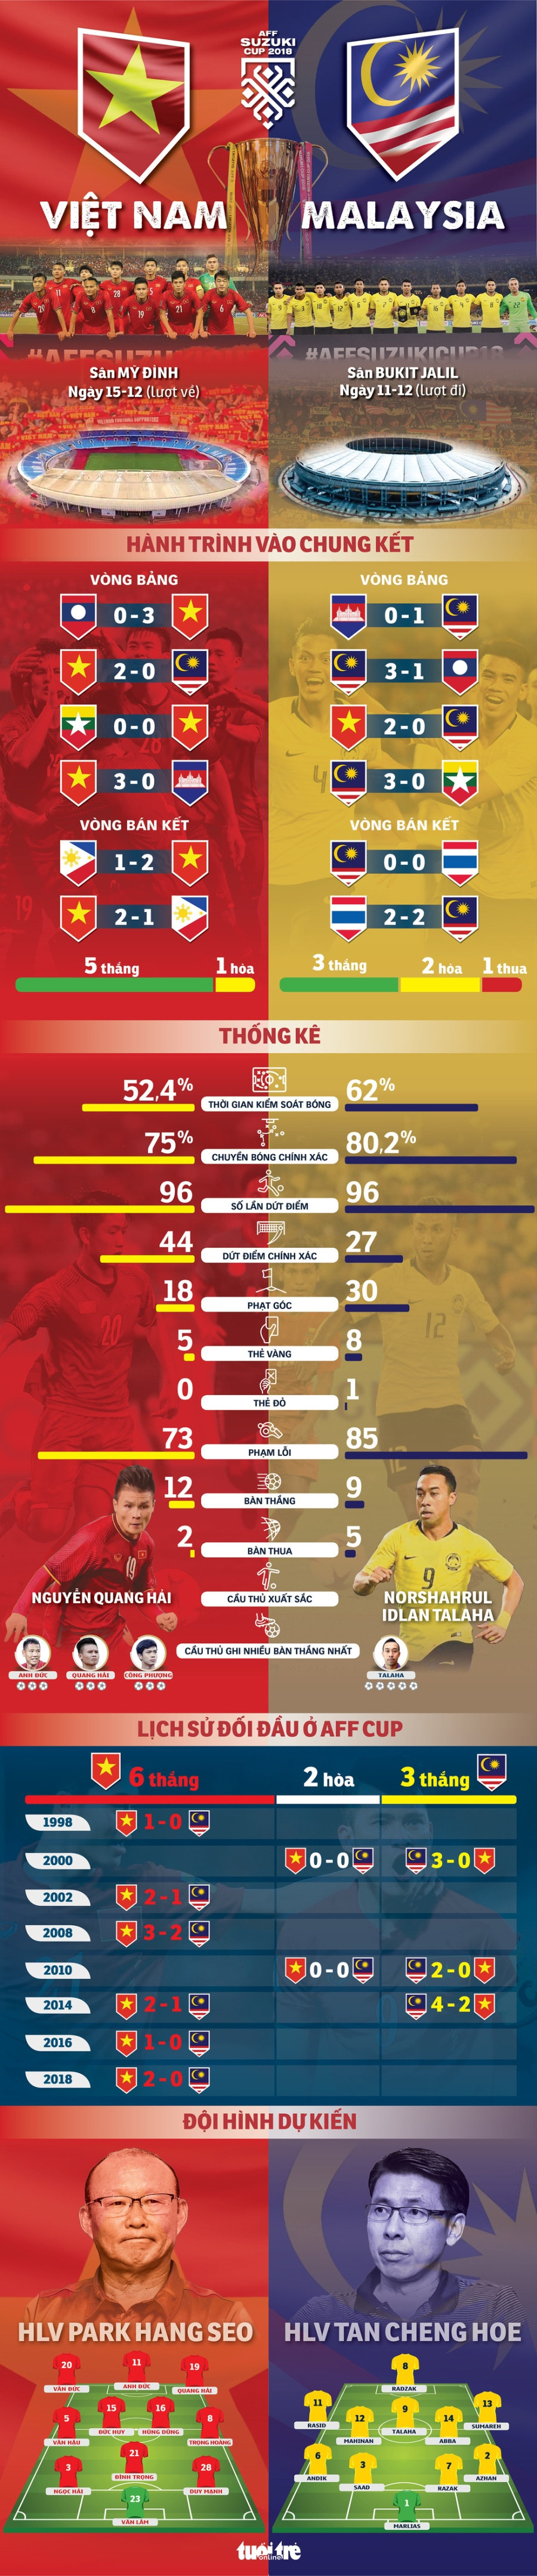 Tương quan giữa tuyển Việt Nam và Malaysia trước giờ bóng lăn - Ảnh 1.